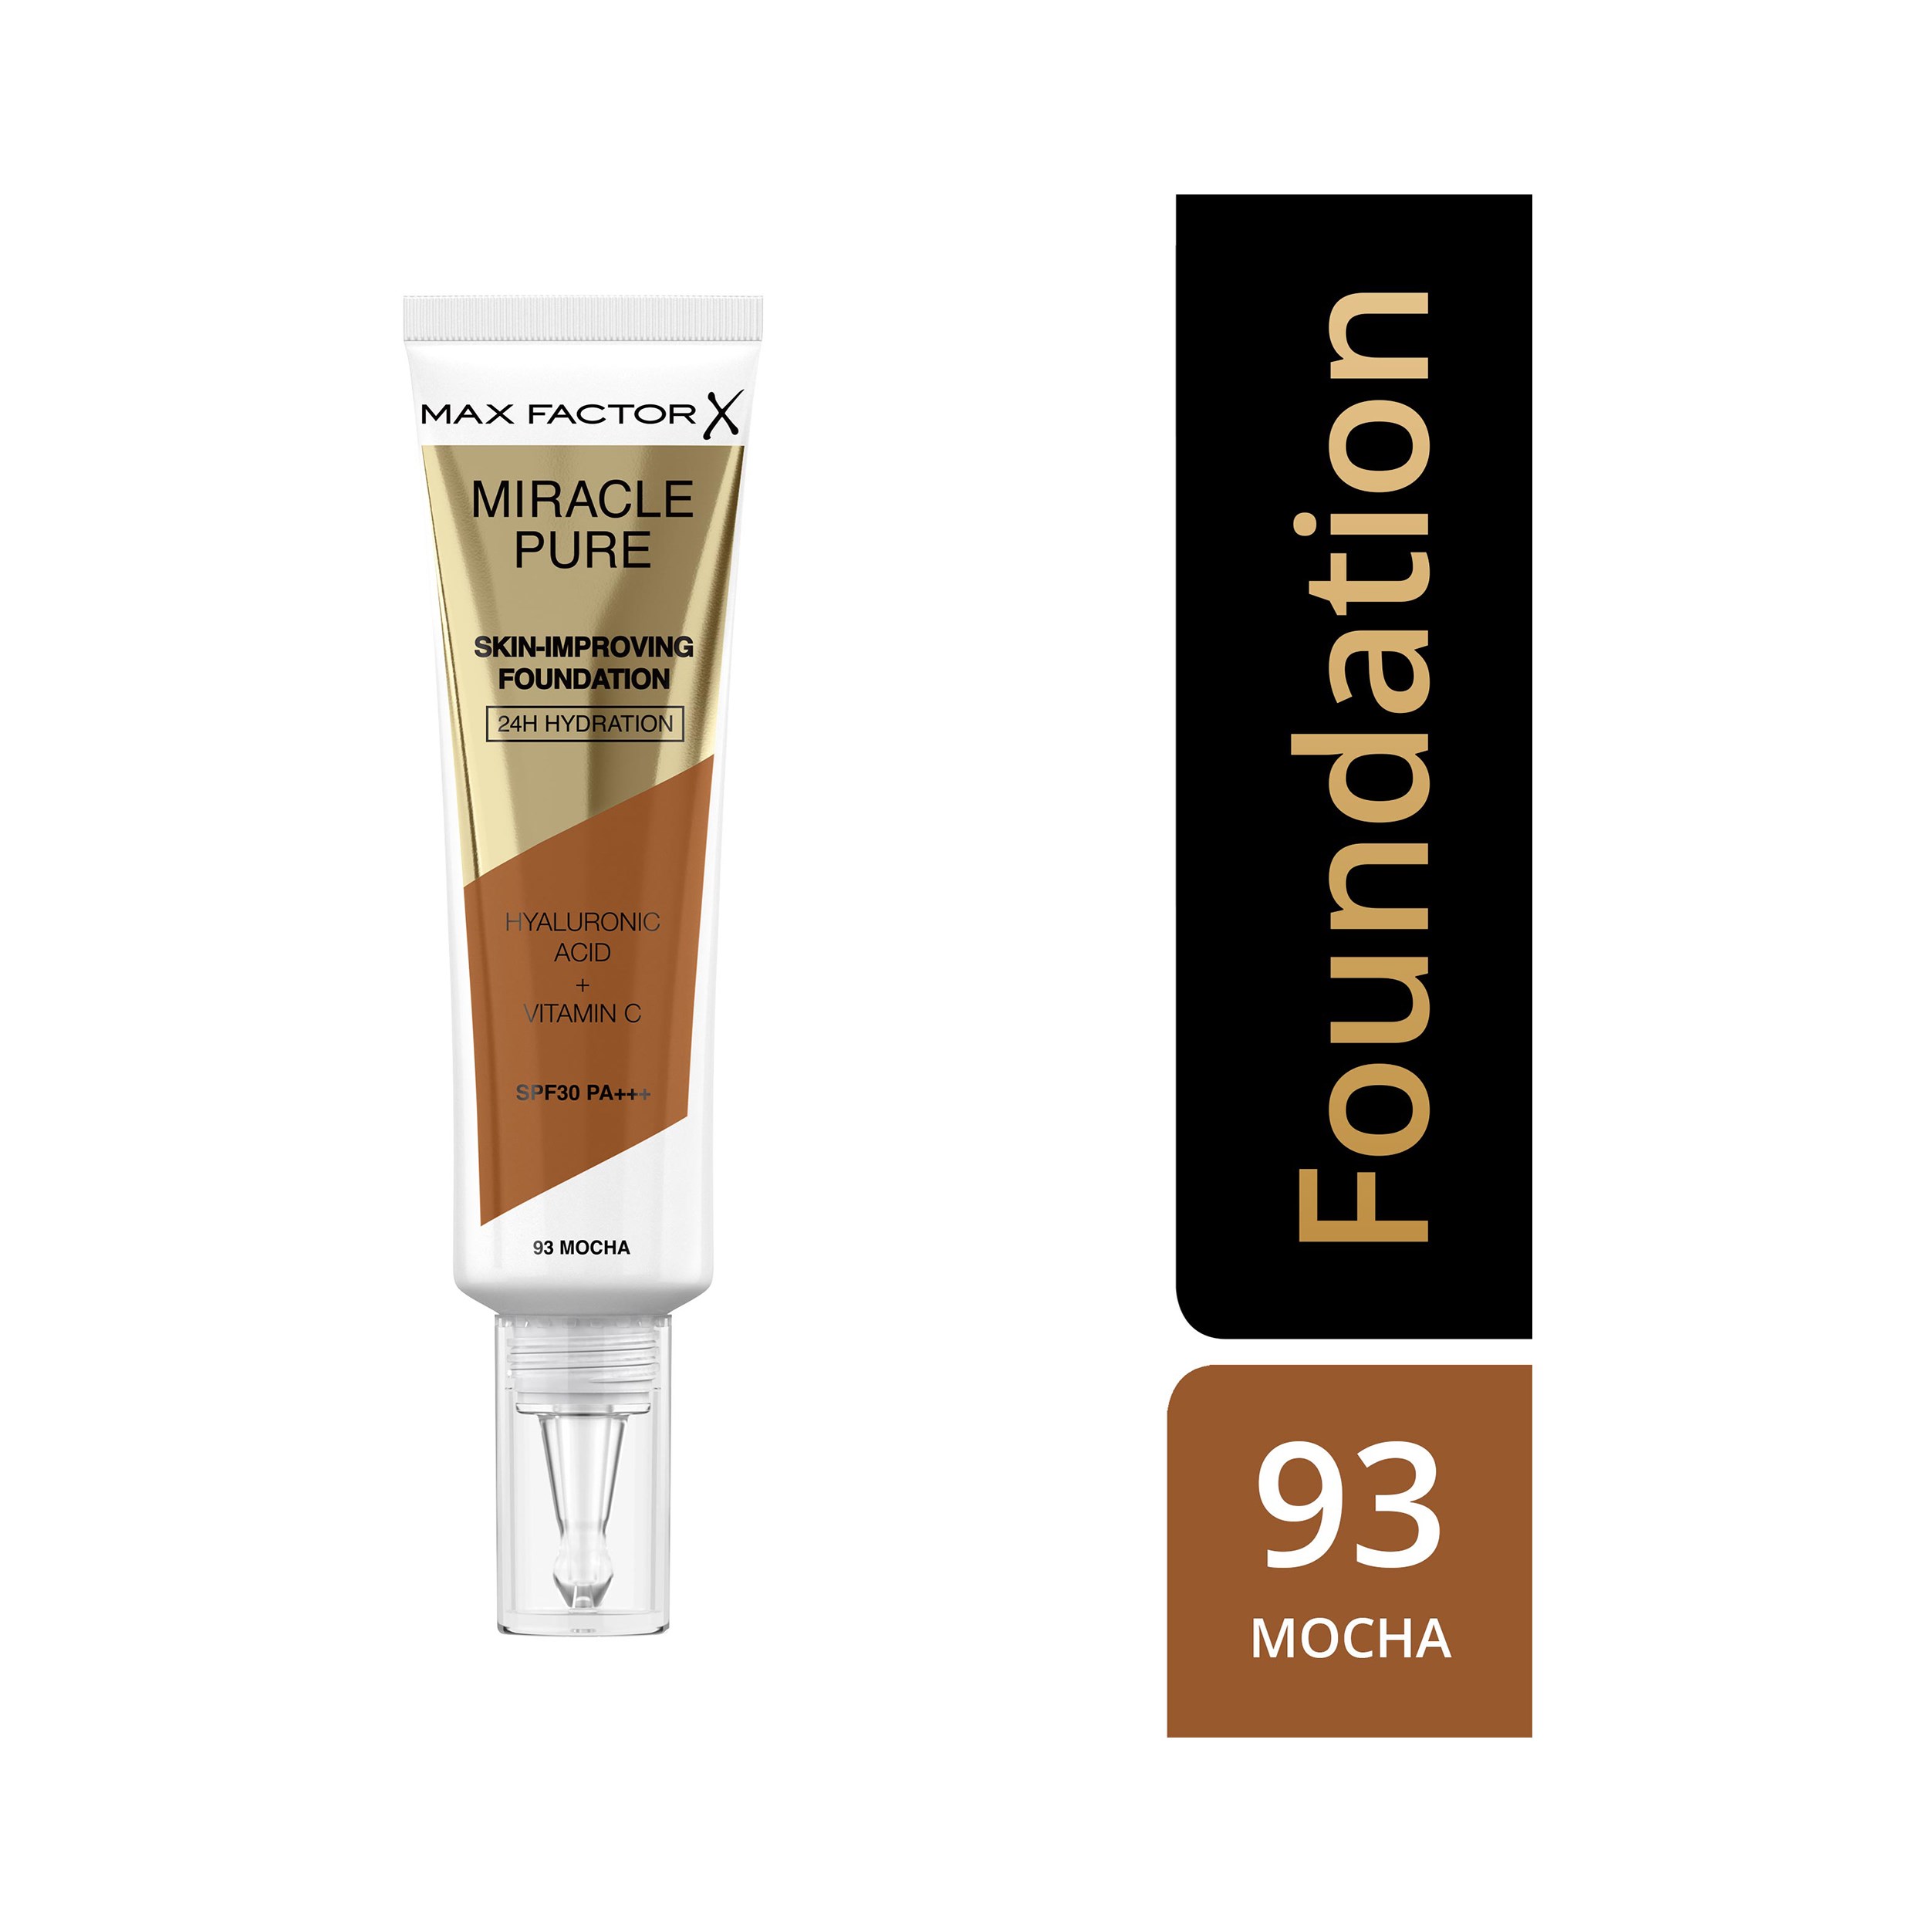 Läs mer om Max Factor Miracle Pure Skin-Improving Foundation 93 Mocha